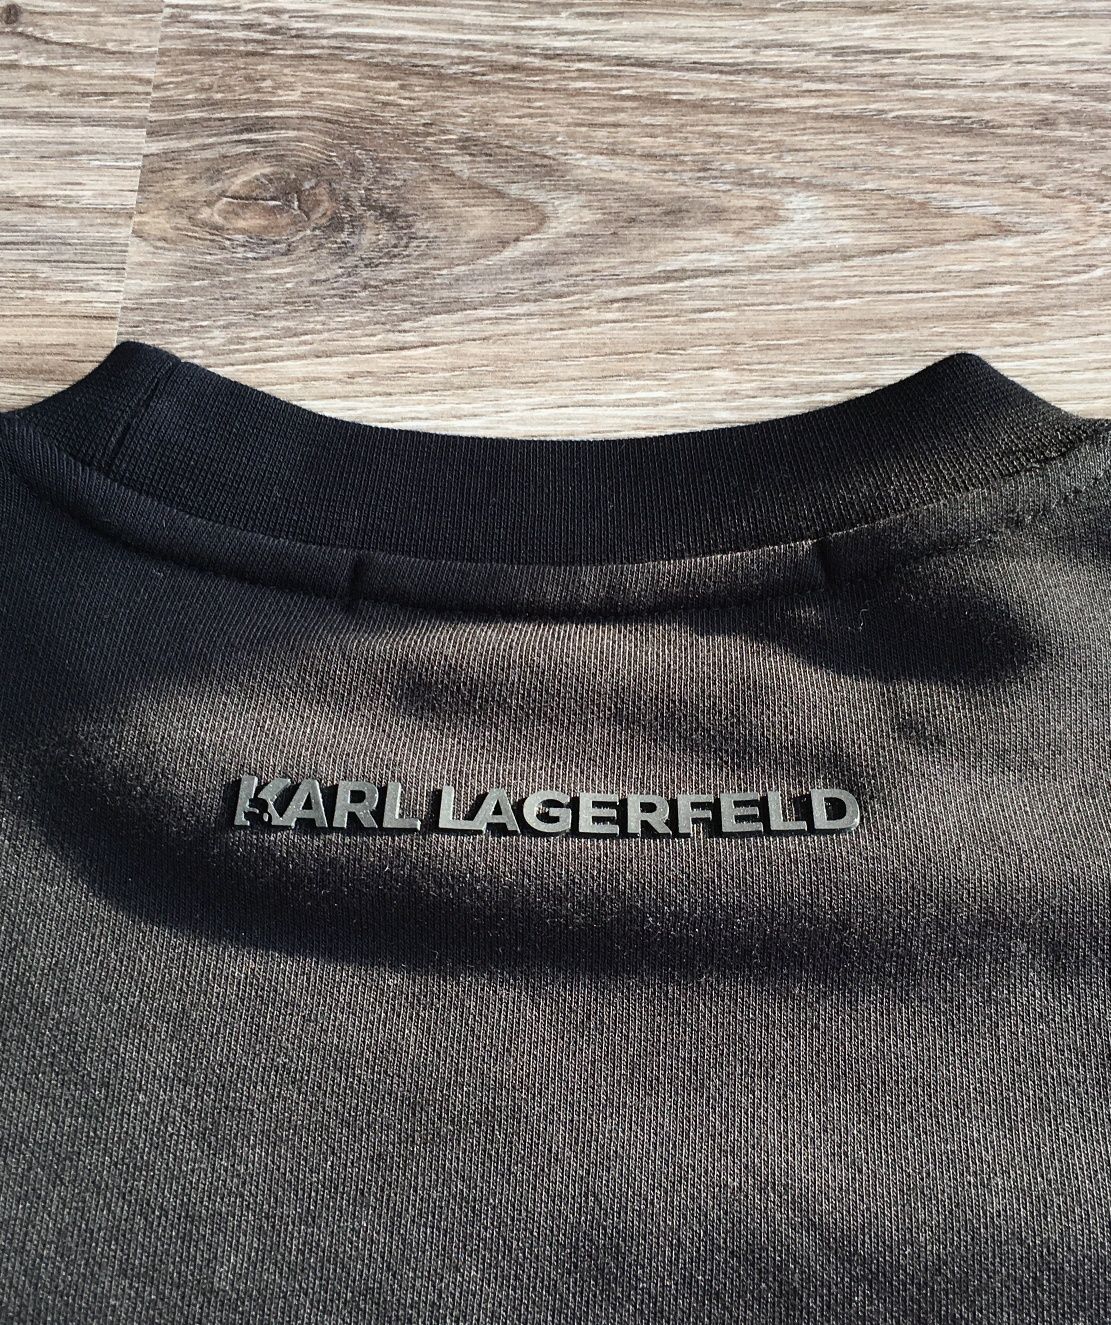 Bluza Karl Lagerfeld Czarna z nadrukiem. Rozm M